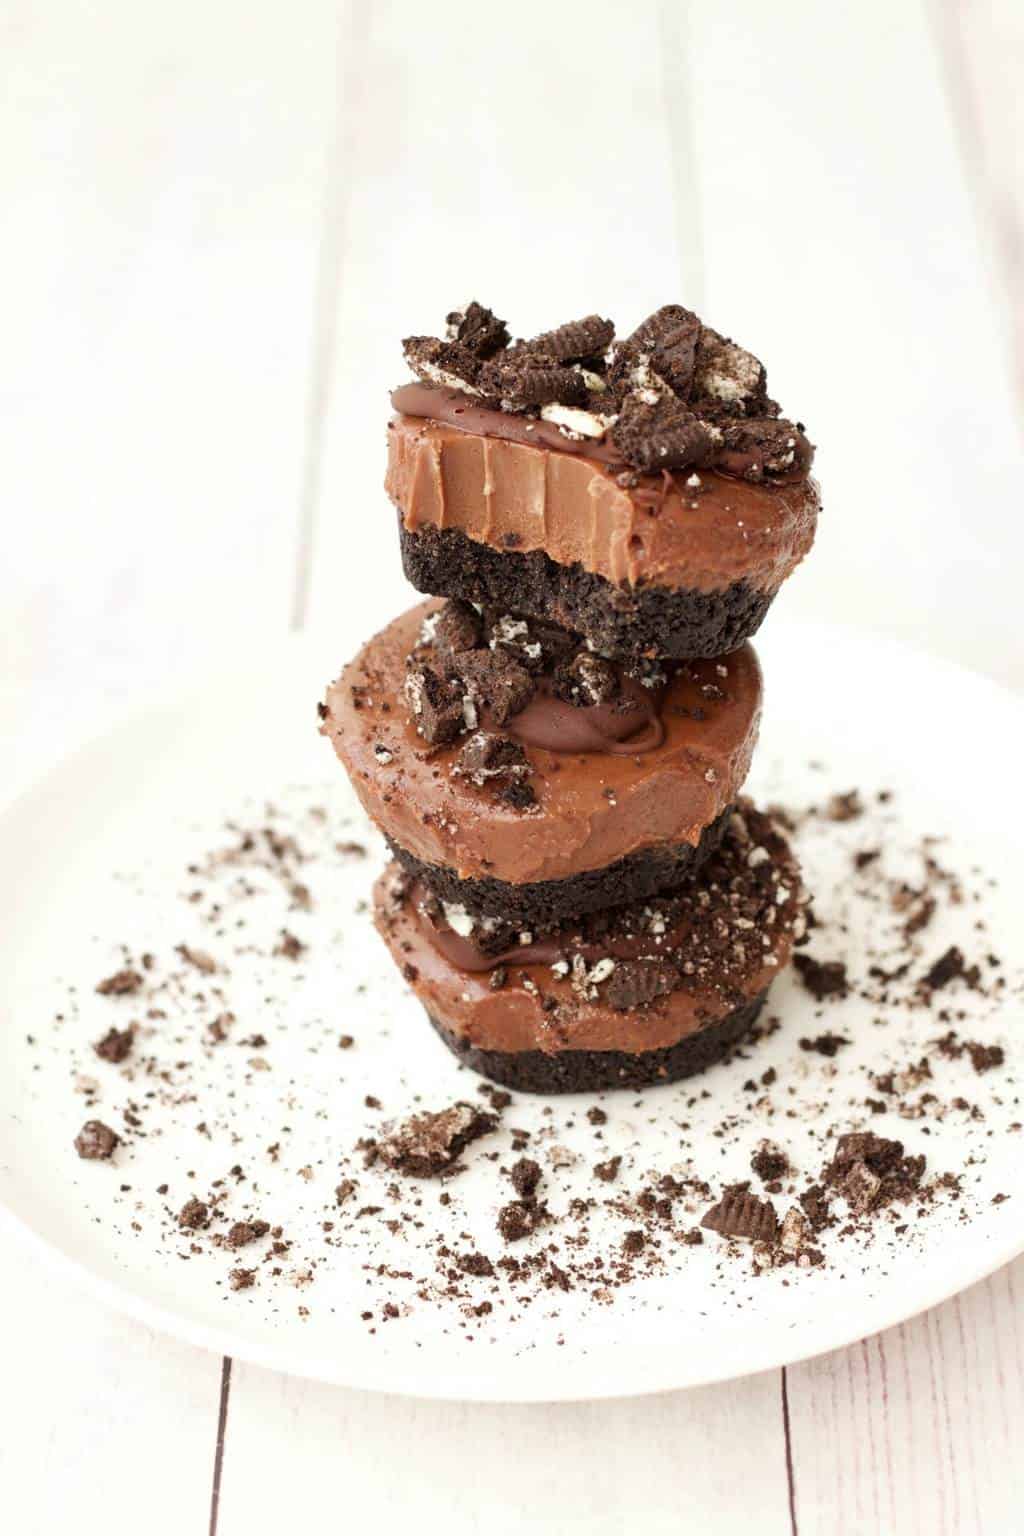 Mini vegán csokoládé sajttorta # vegán #lovingitvegan # cheesecakes # desszert #dairyfree # oreos